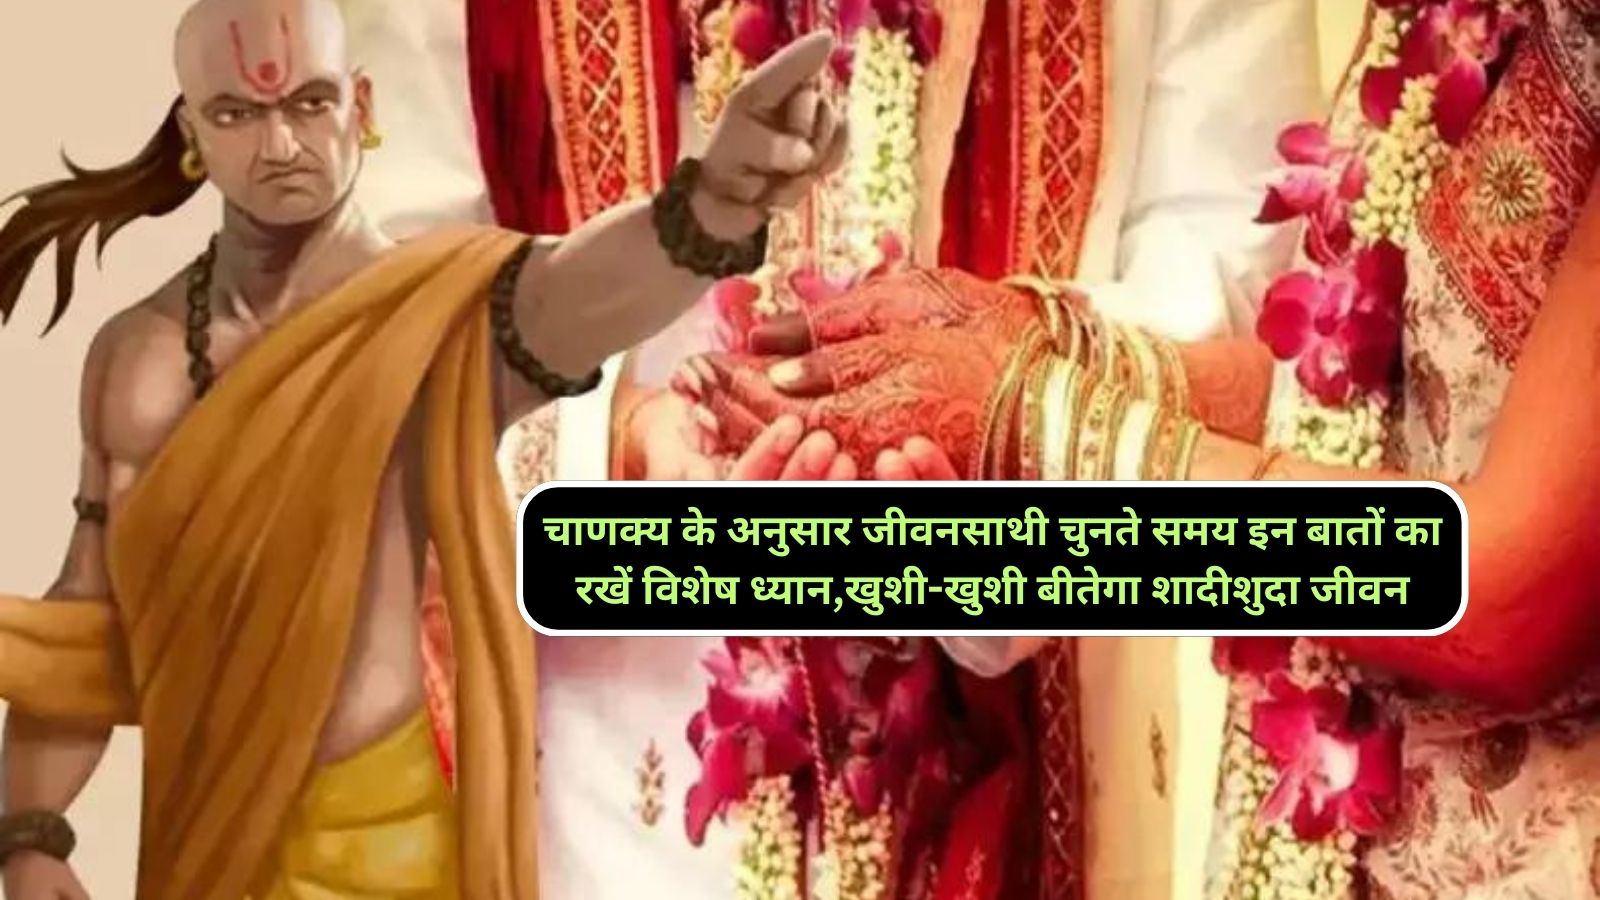 Chanakya Niti:चाणक्य के अनुसार जीवनसाथी चुनते समय इन बातों का रखें विशेष ध्यान,खुशी-खुशी बीतेगा शादीशुदा जीवन